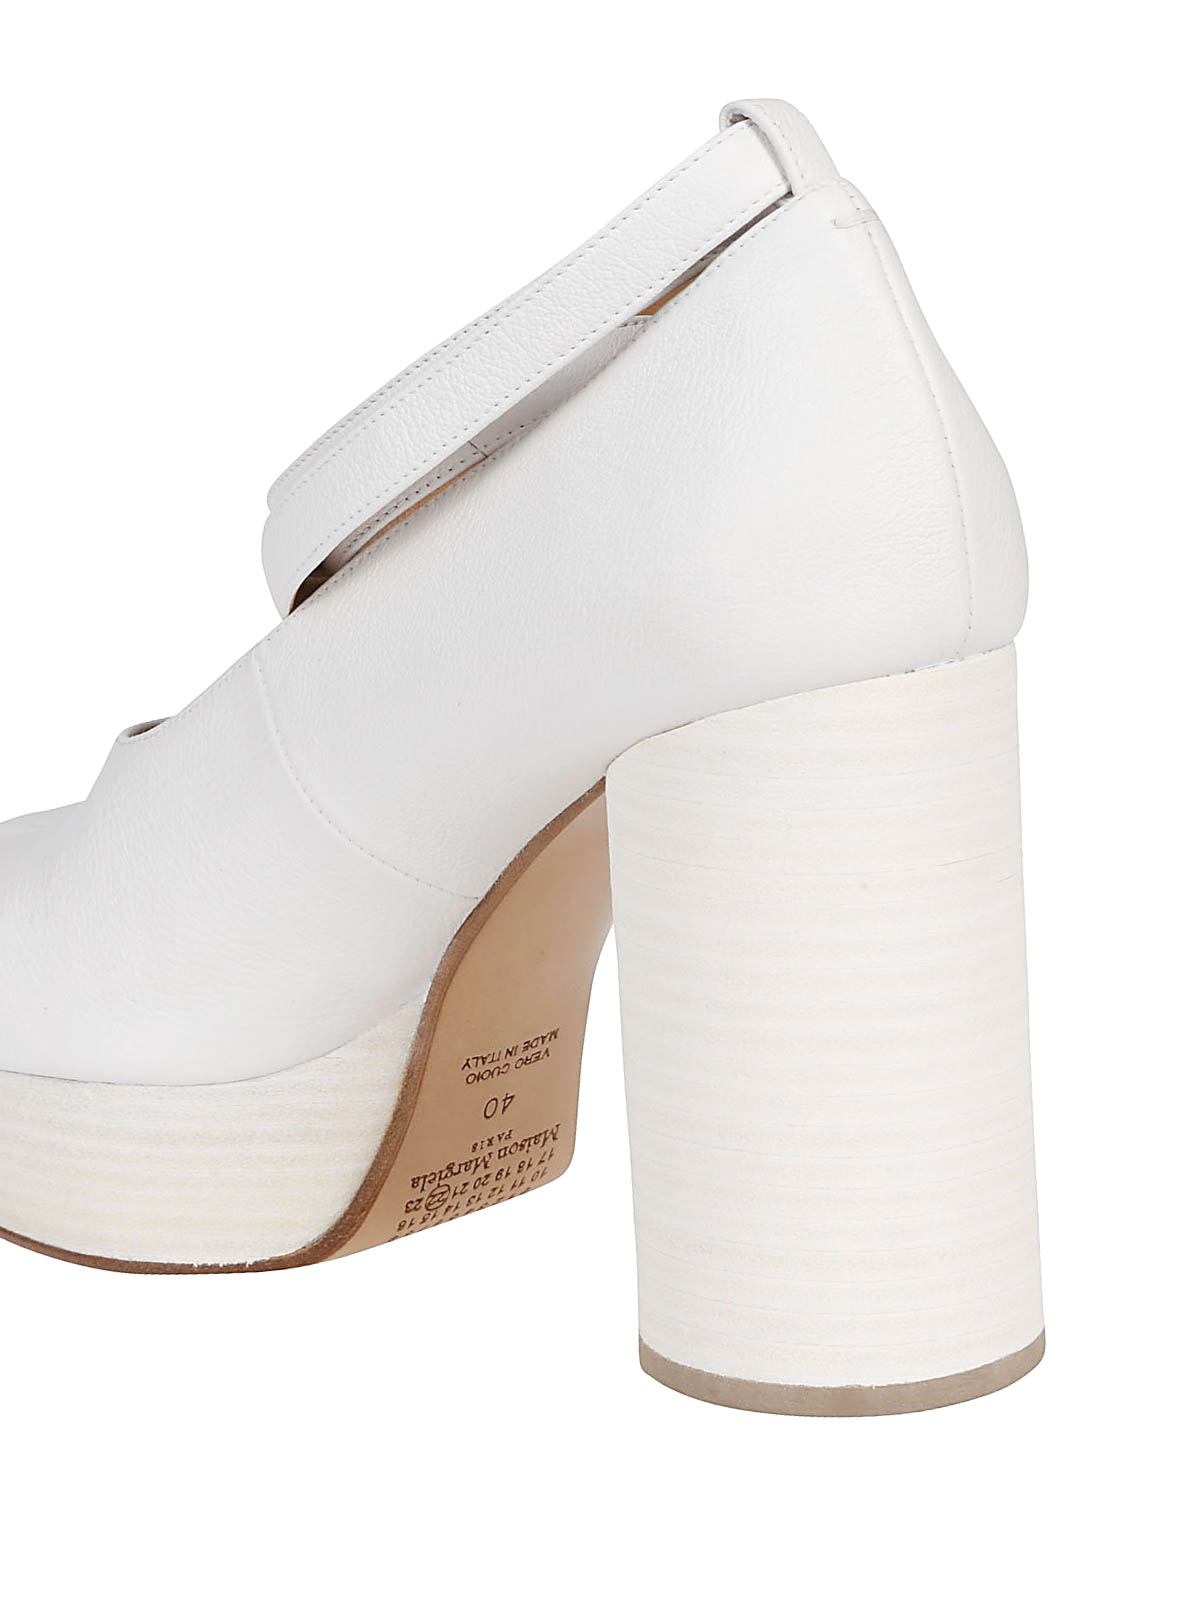 Pumps in leather Maison Margiela en coloris Blanc Femme Chaussures Chaussures à talons Escarpins 